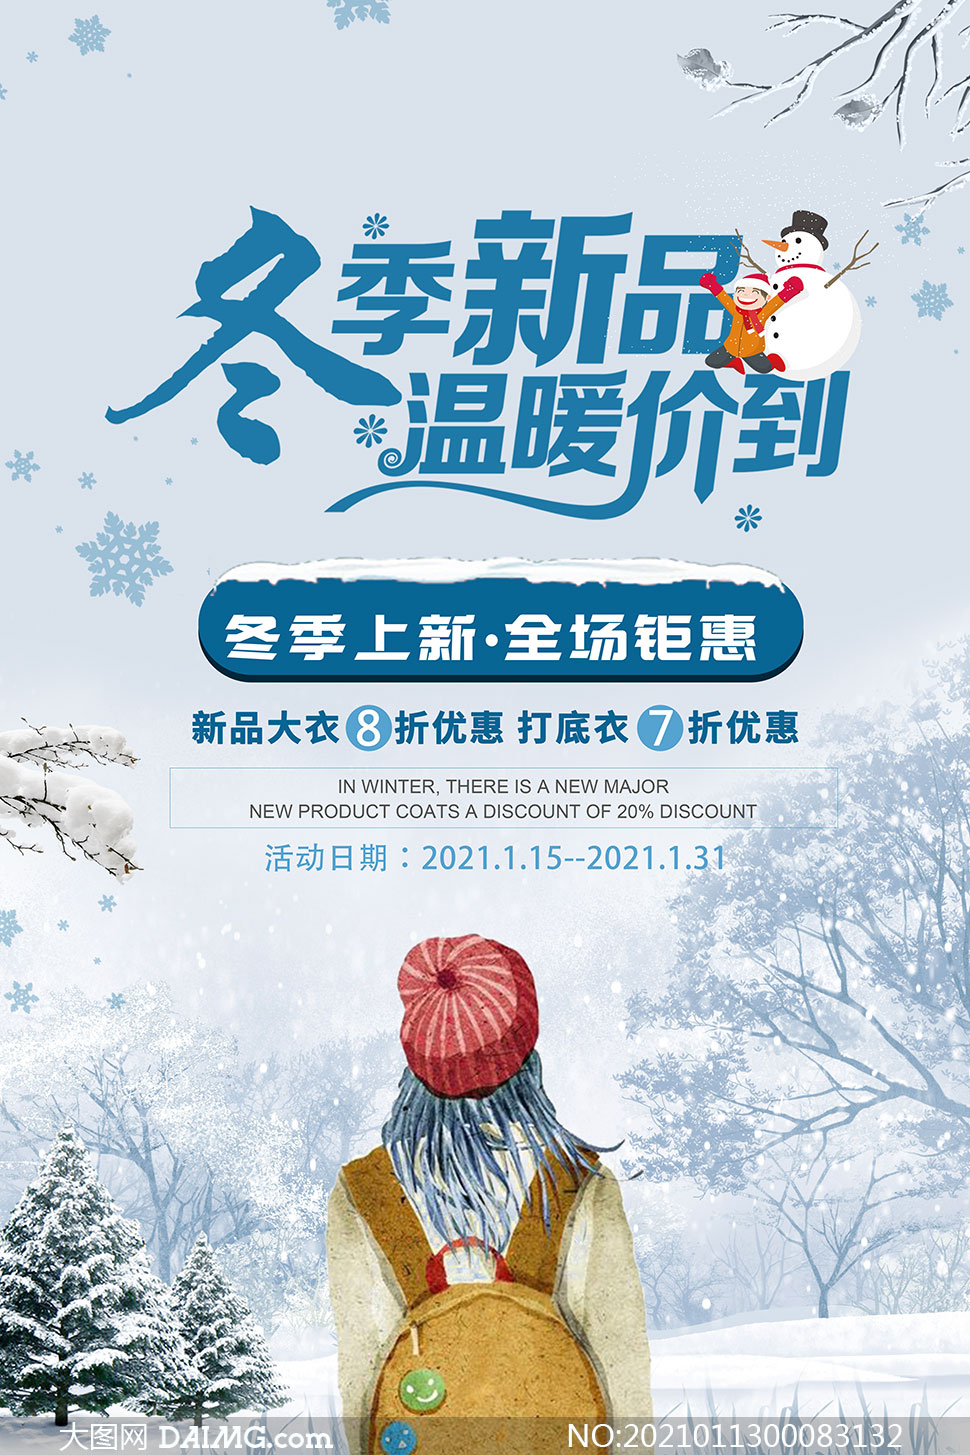 冬季服装宣传语图片